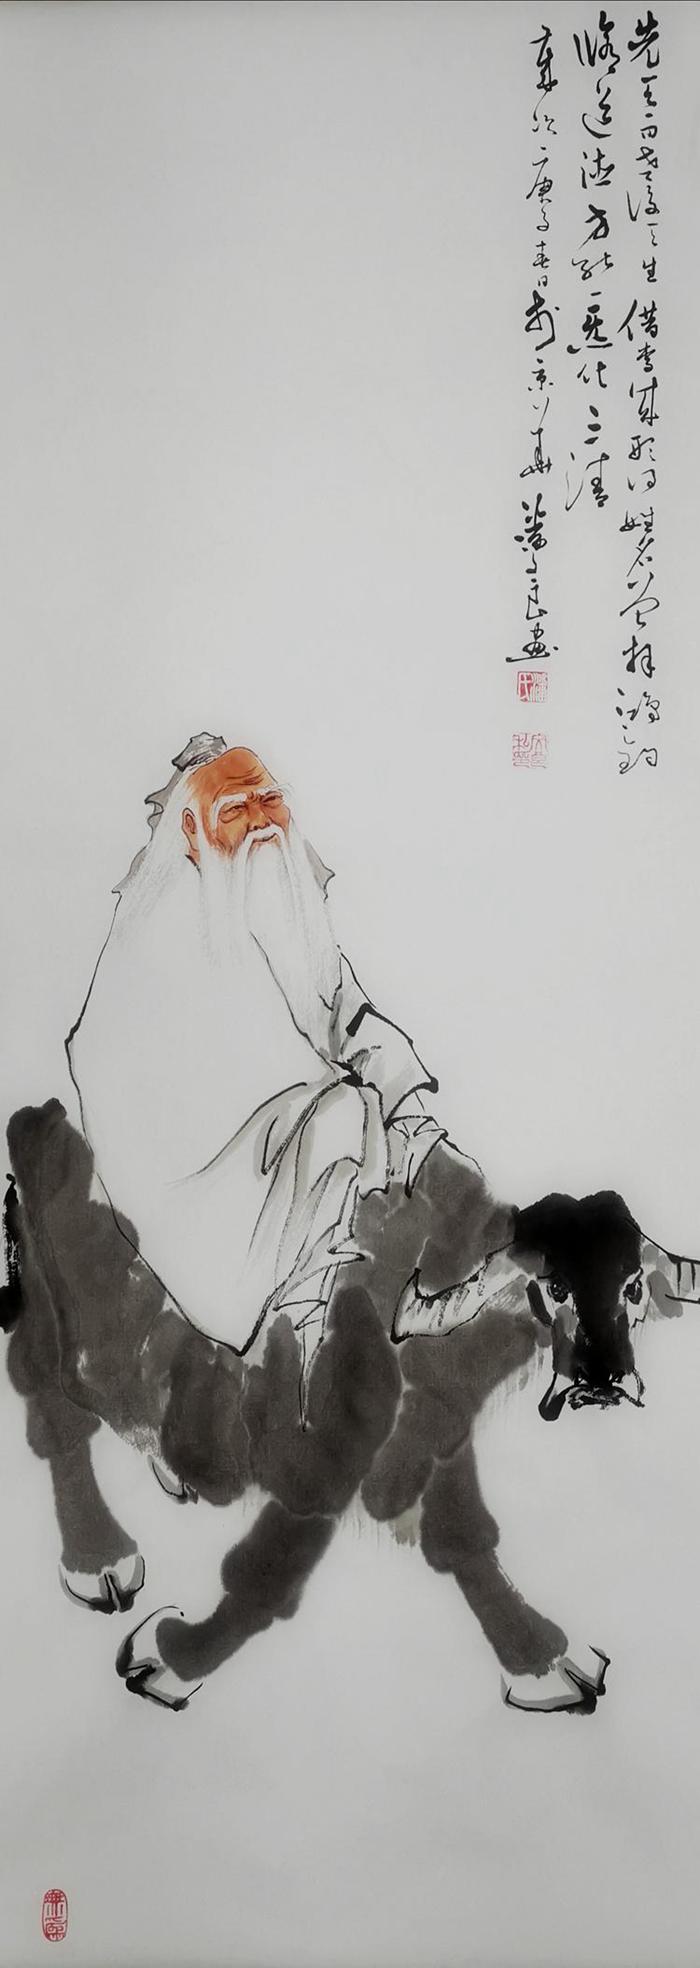 Nacido en 1971 en la ciudad de Nan'an, en la provincia de Fujian, sus obras de pintura sobre el buey tienen características de la pintura china de tinta y lavado, que refleja la naturaleza y aporta un toque humanista. Las obras de Pan Wenliang se han expuesto en museos de arte de Beijing y París. (Foto: cortesía de Pan Wenliang)